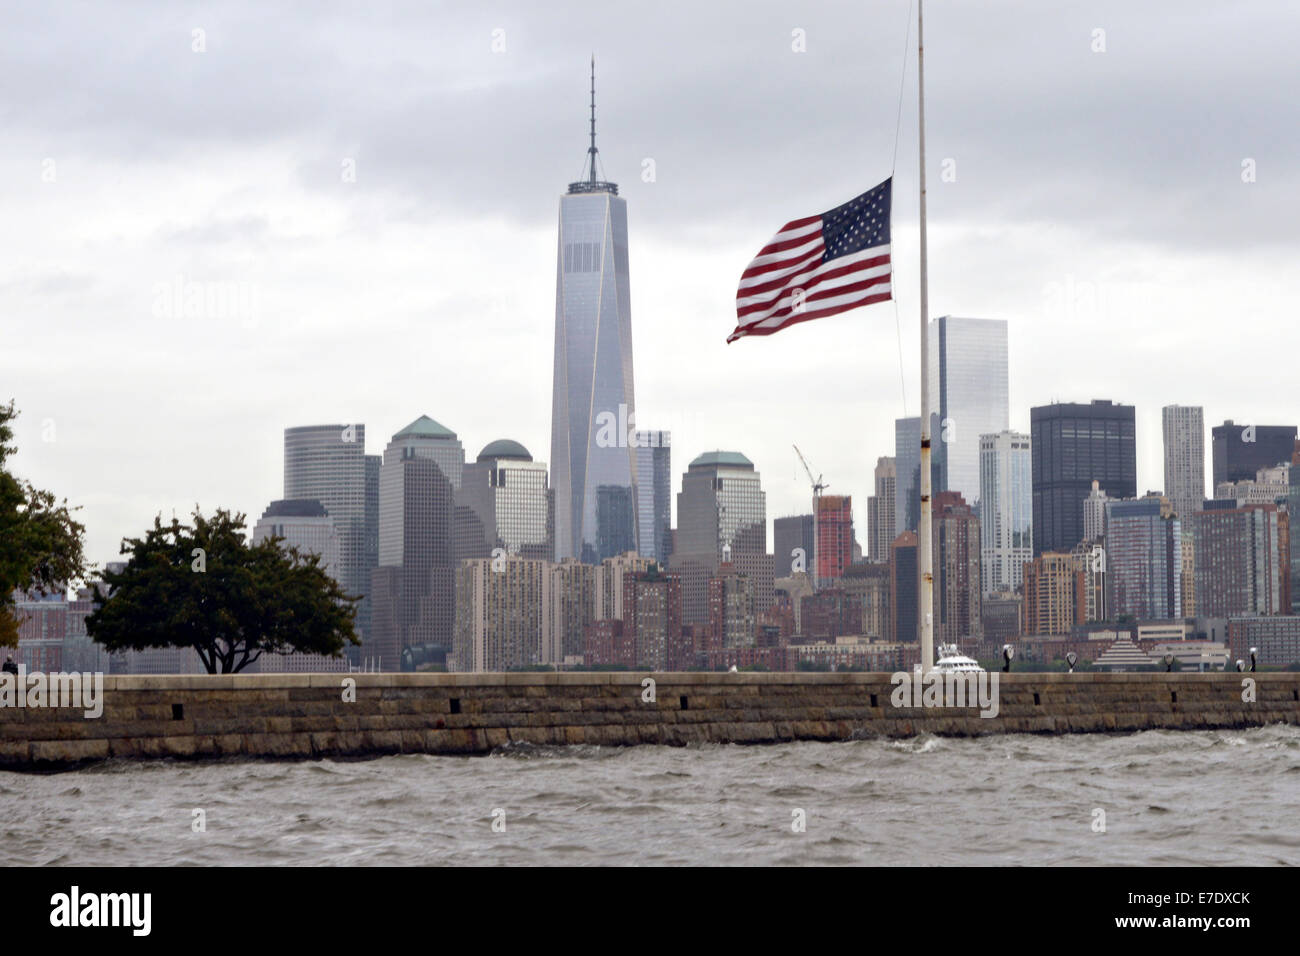 La bandiera americana su Ellis Island a metà del personale in un giorno nuvoloso con la Freedom Tower e lo skyline di Manhattan durante il tredicesimo anniversario del 9/11 gli attentati terroristici di settembre 11, 2014. Foto Stock